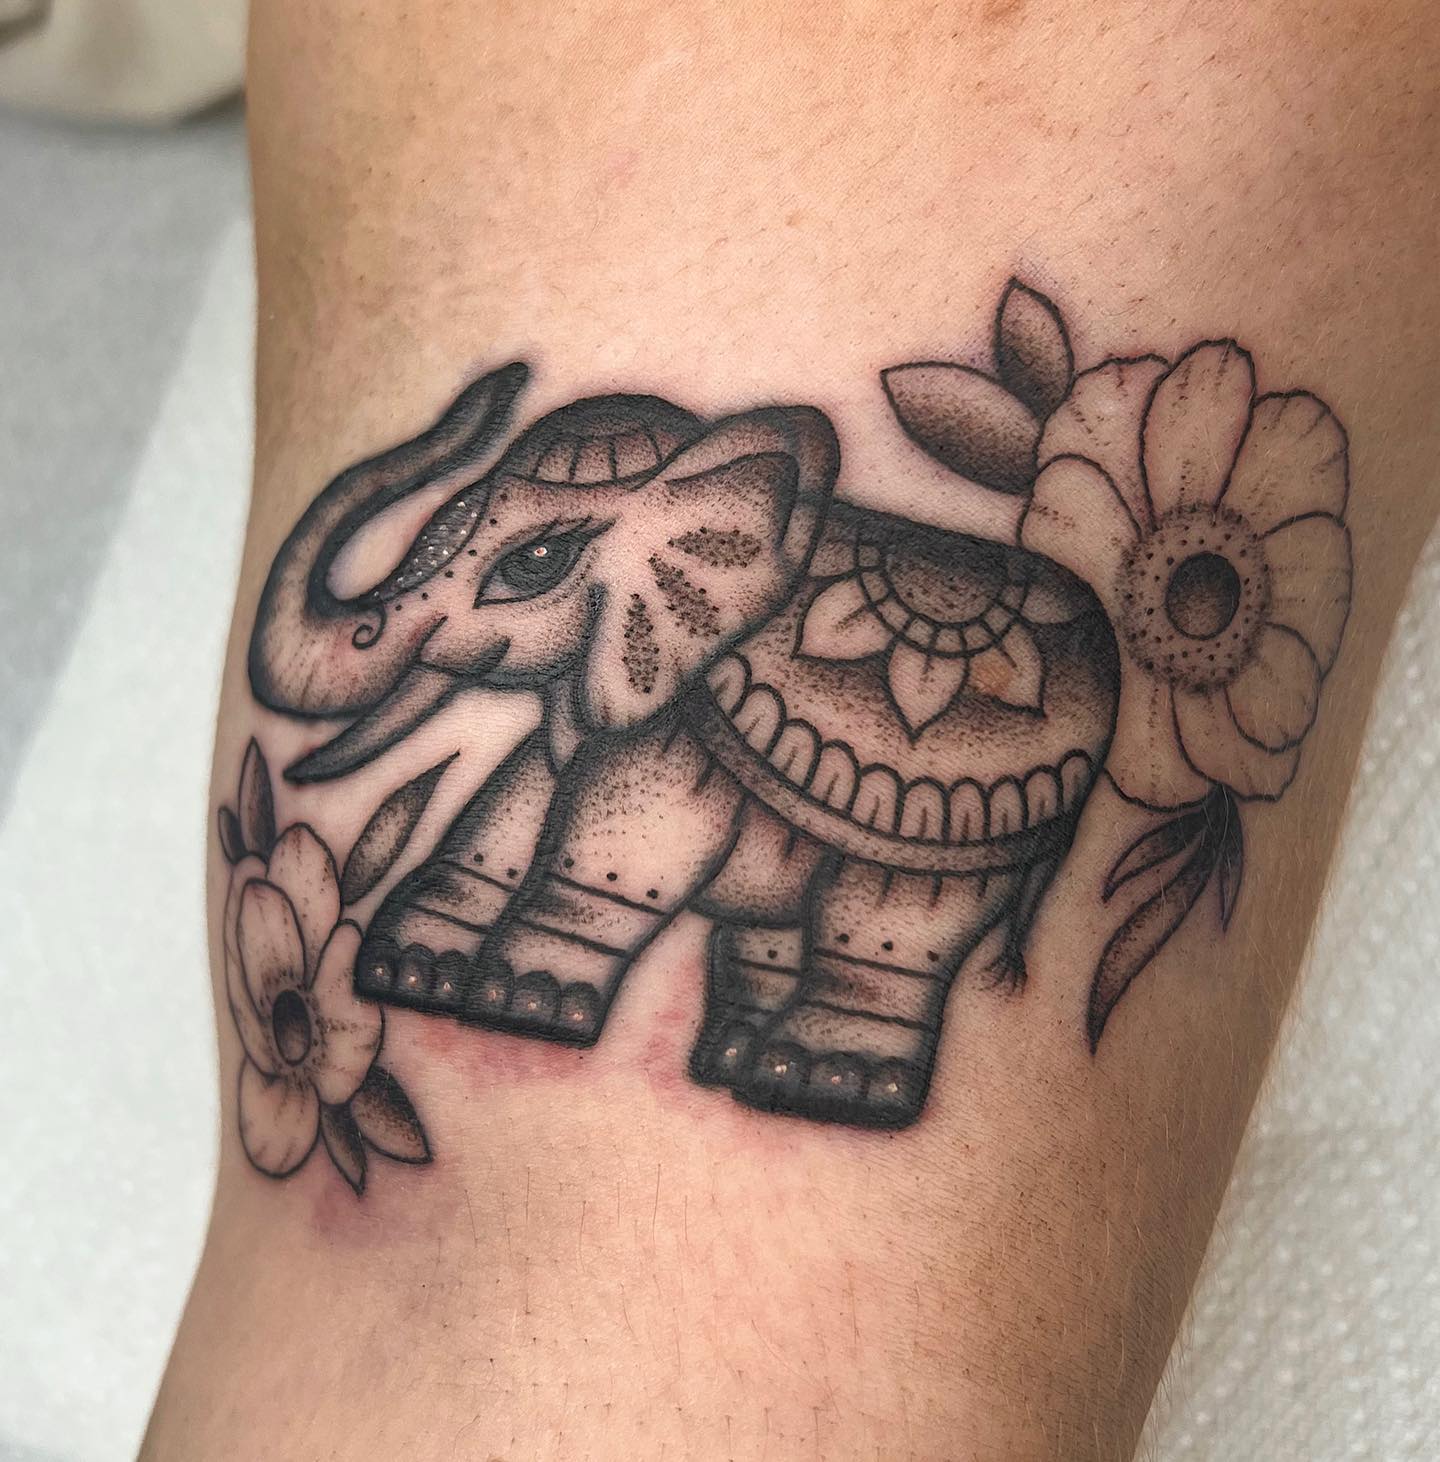 Tatuaje de elefante lindo hecho con puntos.